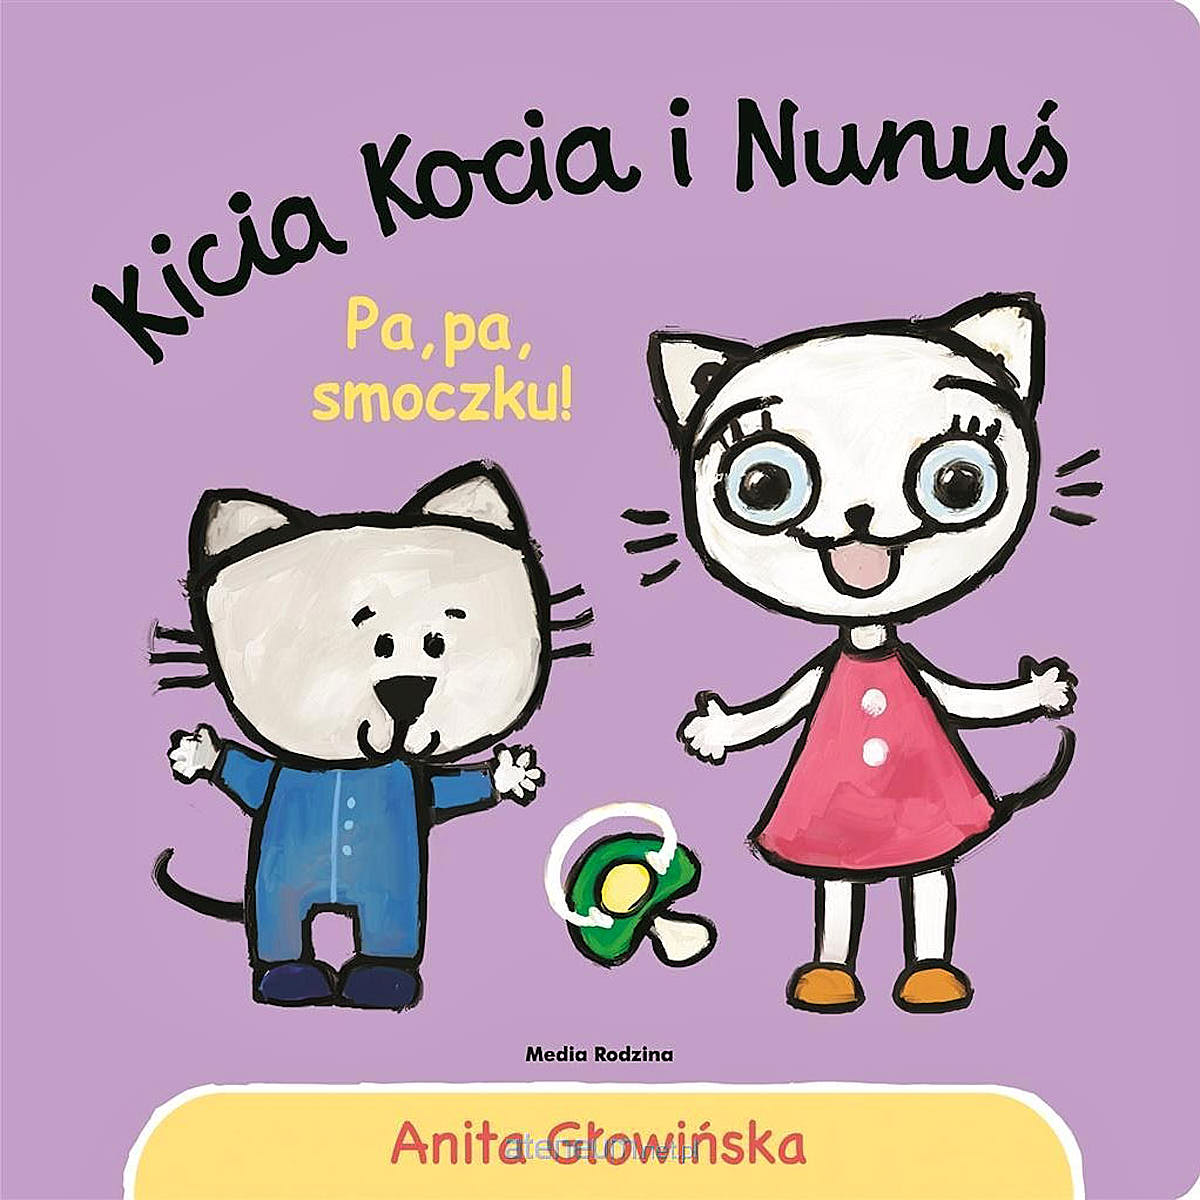 Kicia Kocia i Nunuś. Pa, pa smoczku - Wydawnictwo Media Rodzina